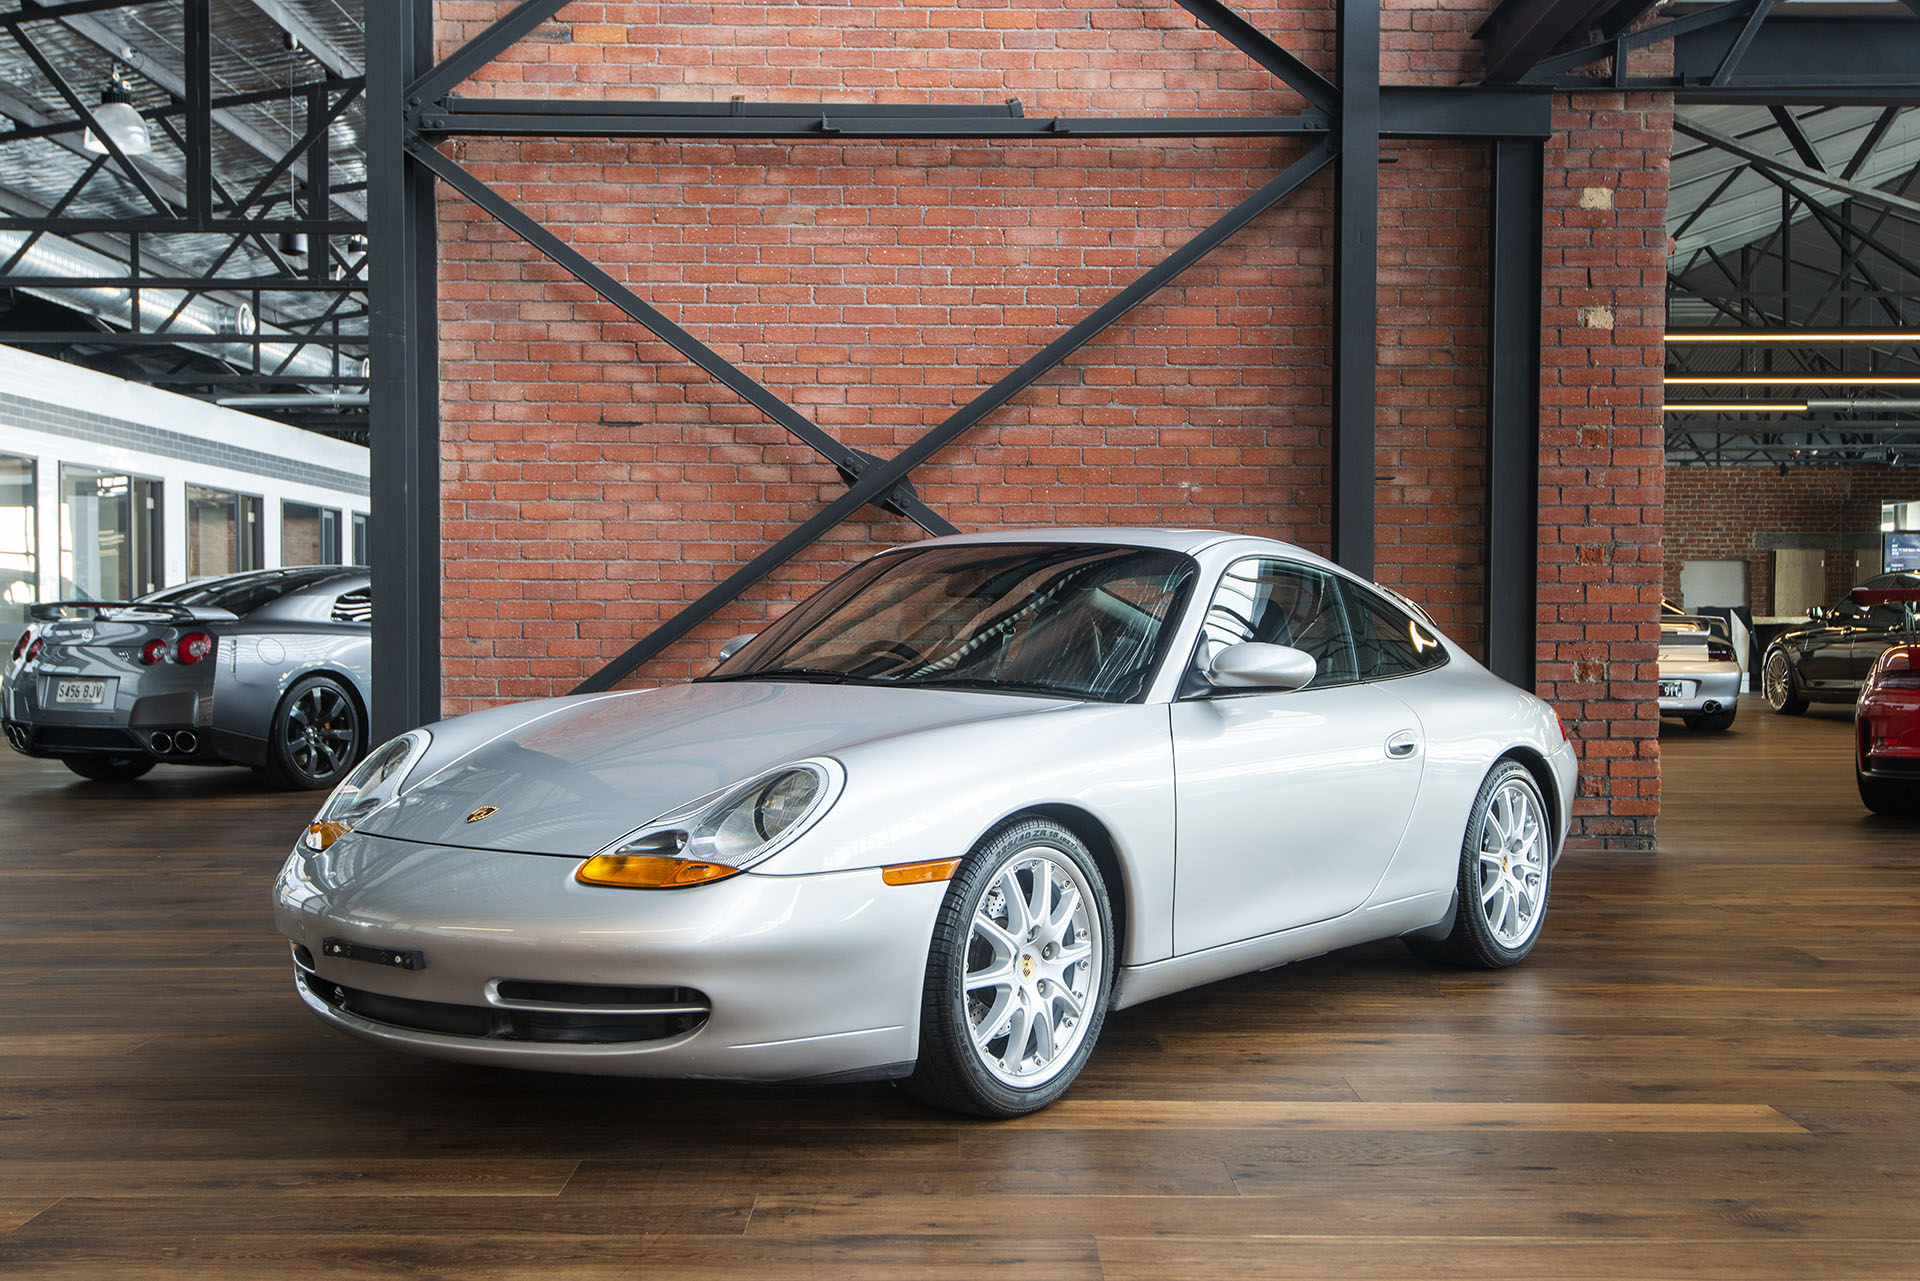 Porsche 911 carrera silver 996 (19) - Richmonds - Classic and Prestige Cars  - Storage and Sales - Adelaide, Australia